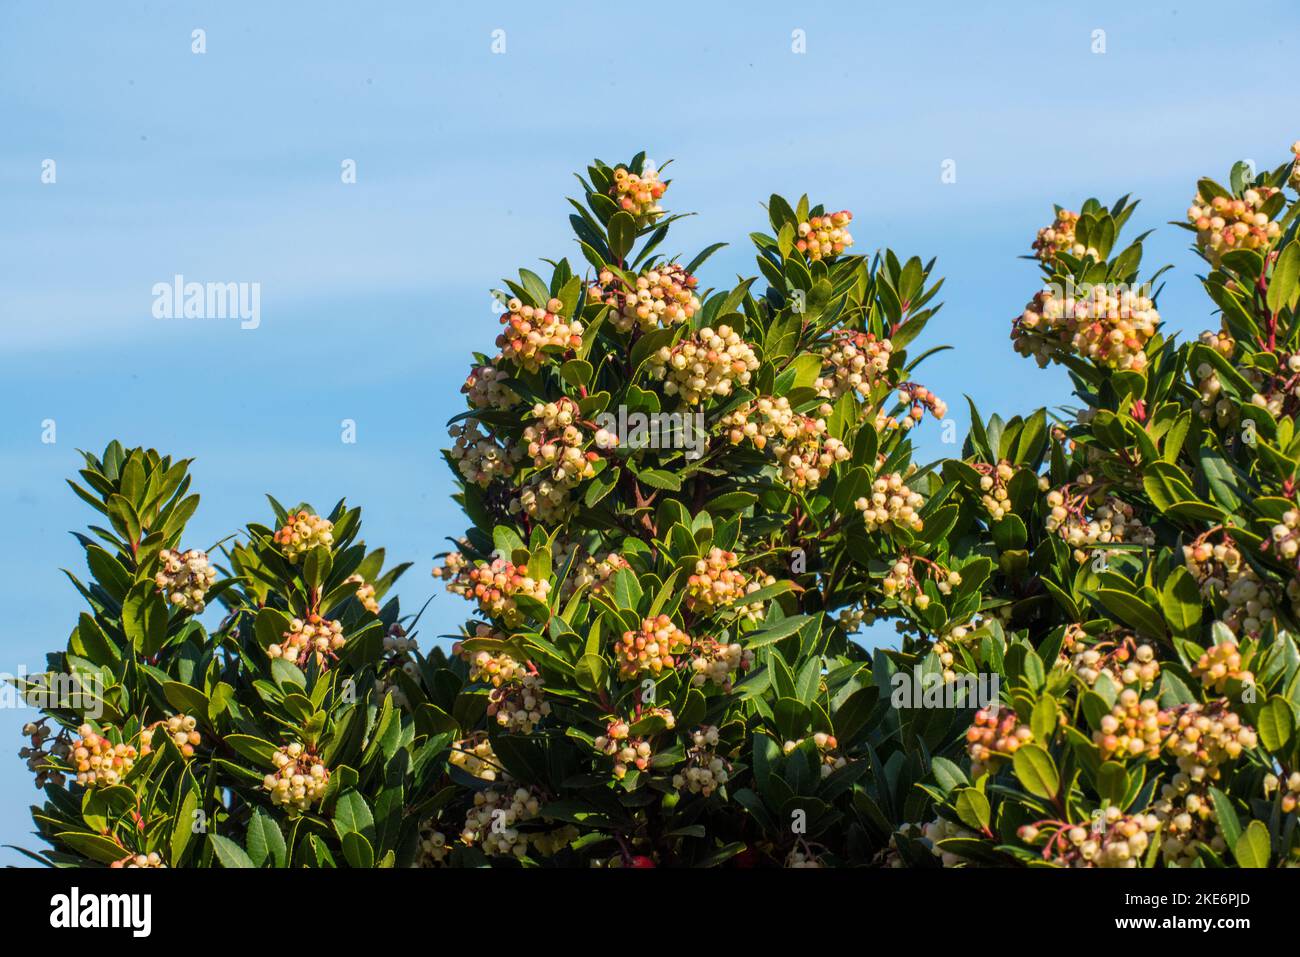 Il corbezzolo, è uno degli arbusti più rappresentativi della macchia mediterranea. Dai suoi frutti, si ottiene un'ottima marmellata. Stock Photo